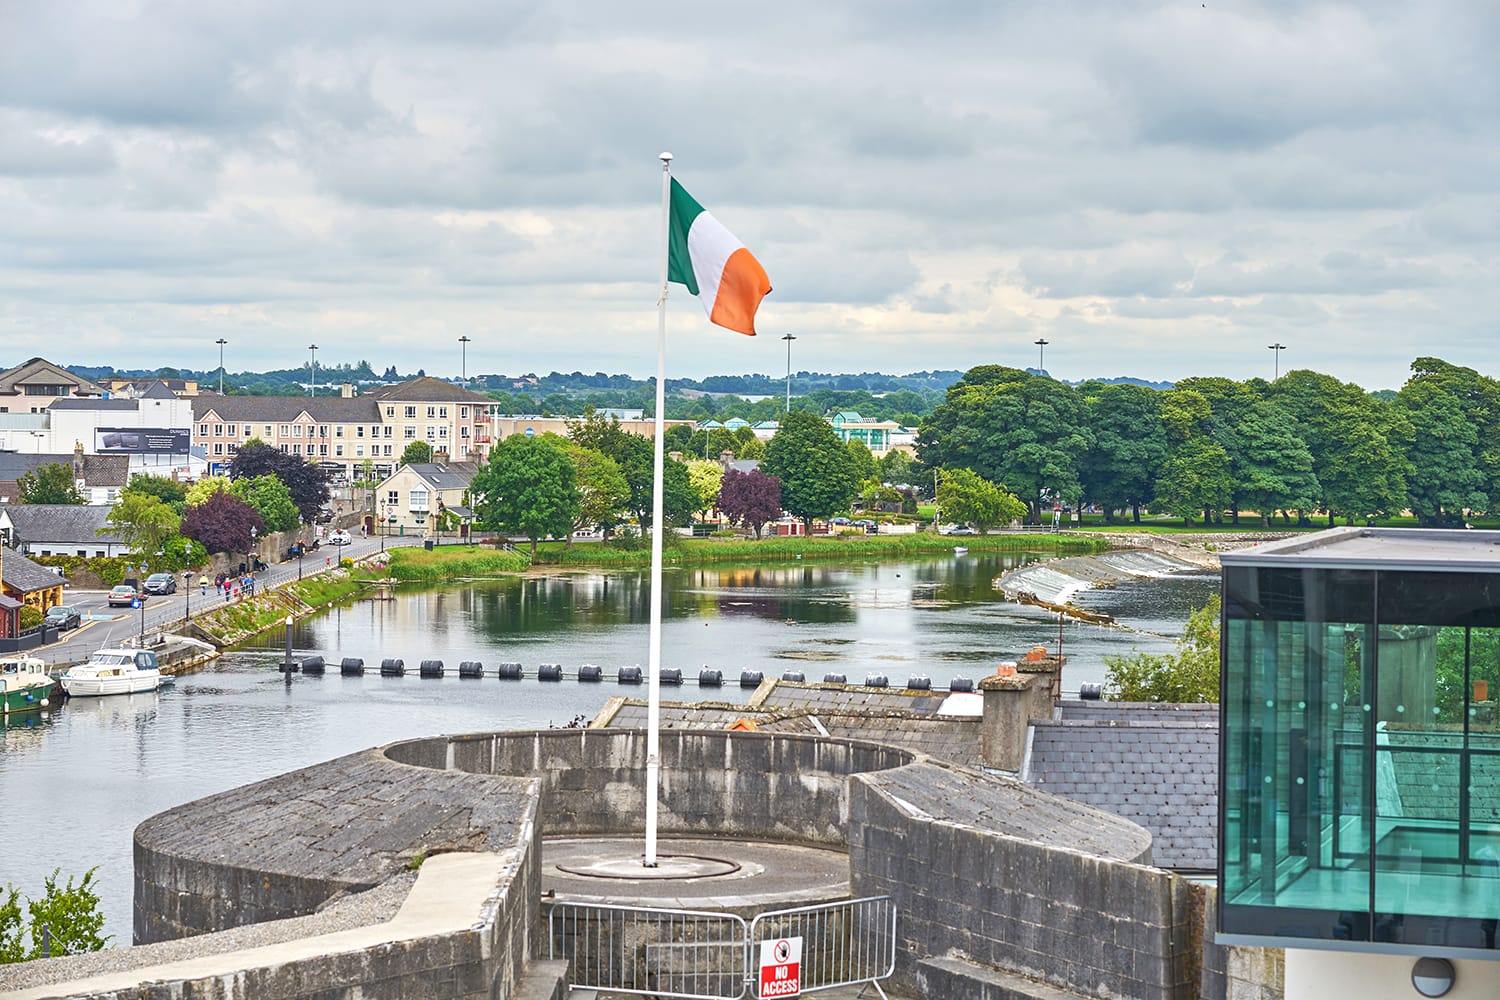 bendera nasional Irlandia berkibar di tiang bendera, di menara Kastil Athlone, Co. Westmeath, Irlandia